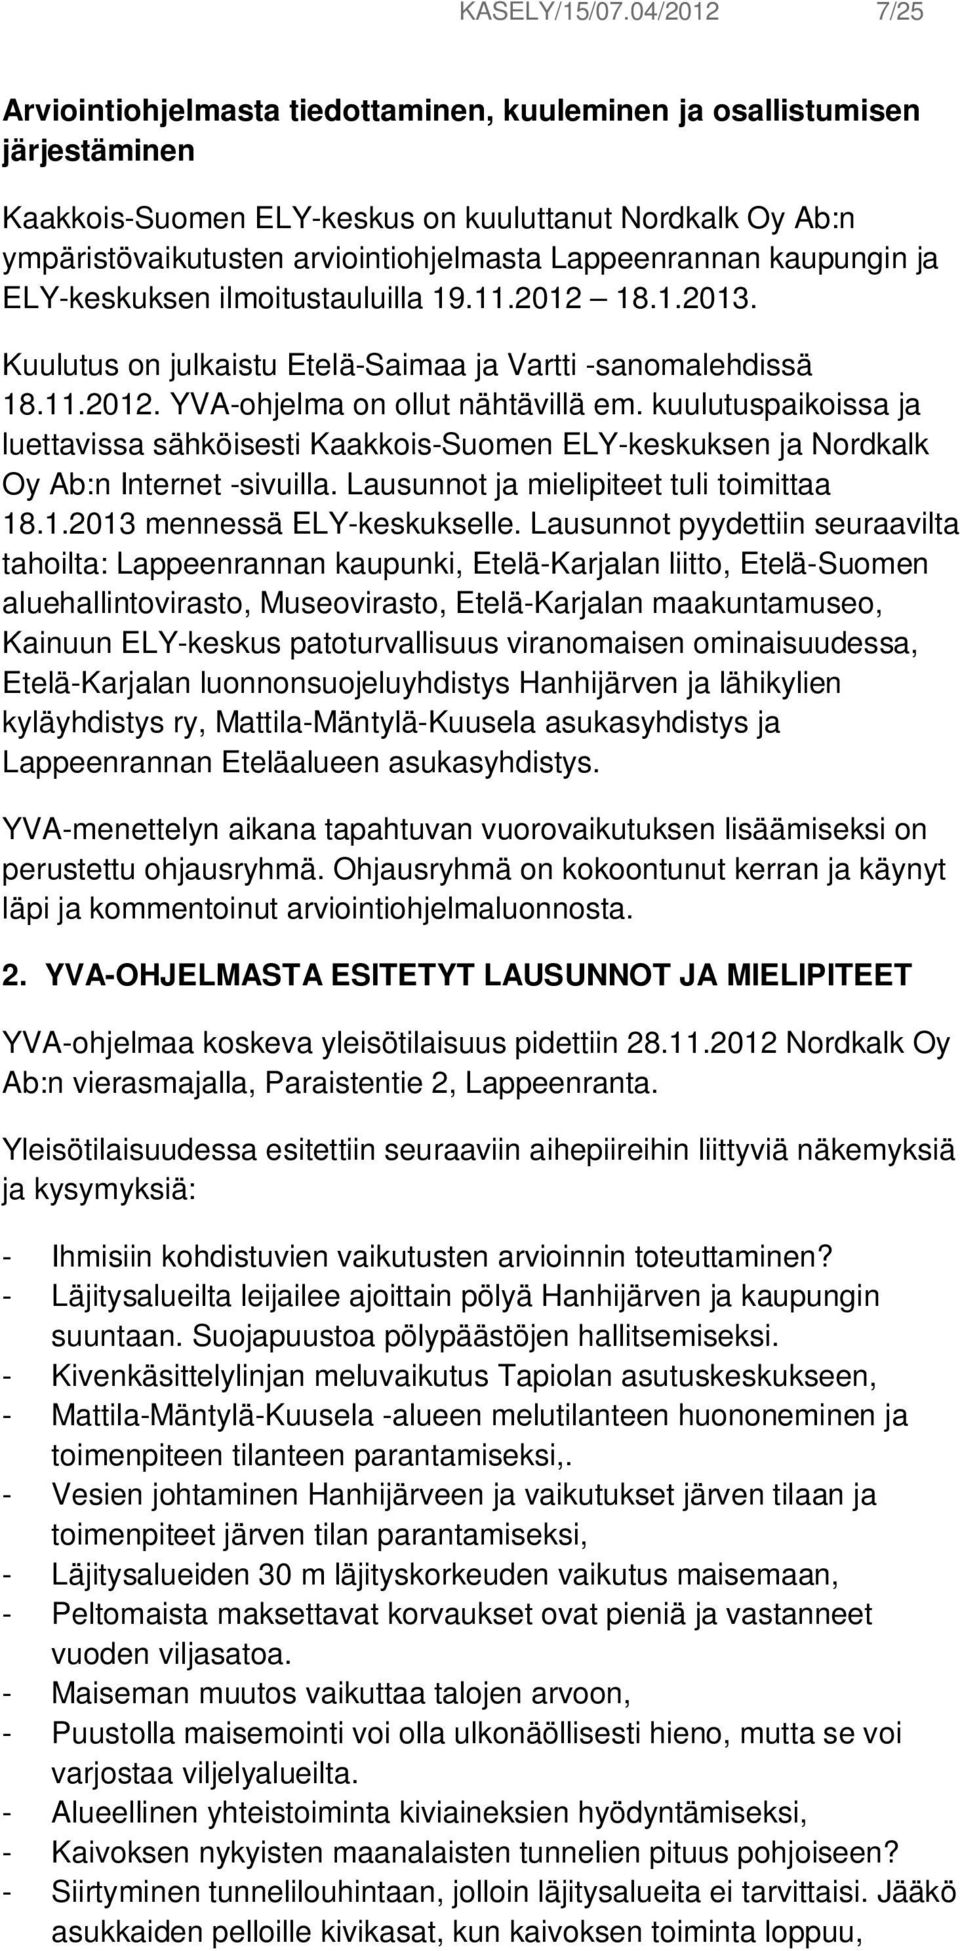 Lappeenrannan kaupungin ja ELY-keskuksen ilmoitustauluilla 19.11.2012 18.1.2013. Kuulutus on julkaistu Etelä-Saimaa ja Vartti -sanomalehdissä 18.11.2012. YVA-ohjelma on ollut nähtävillä em.